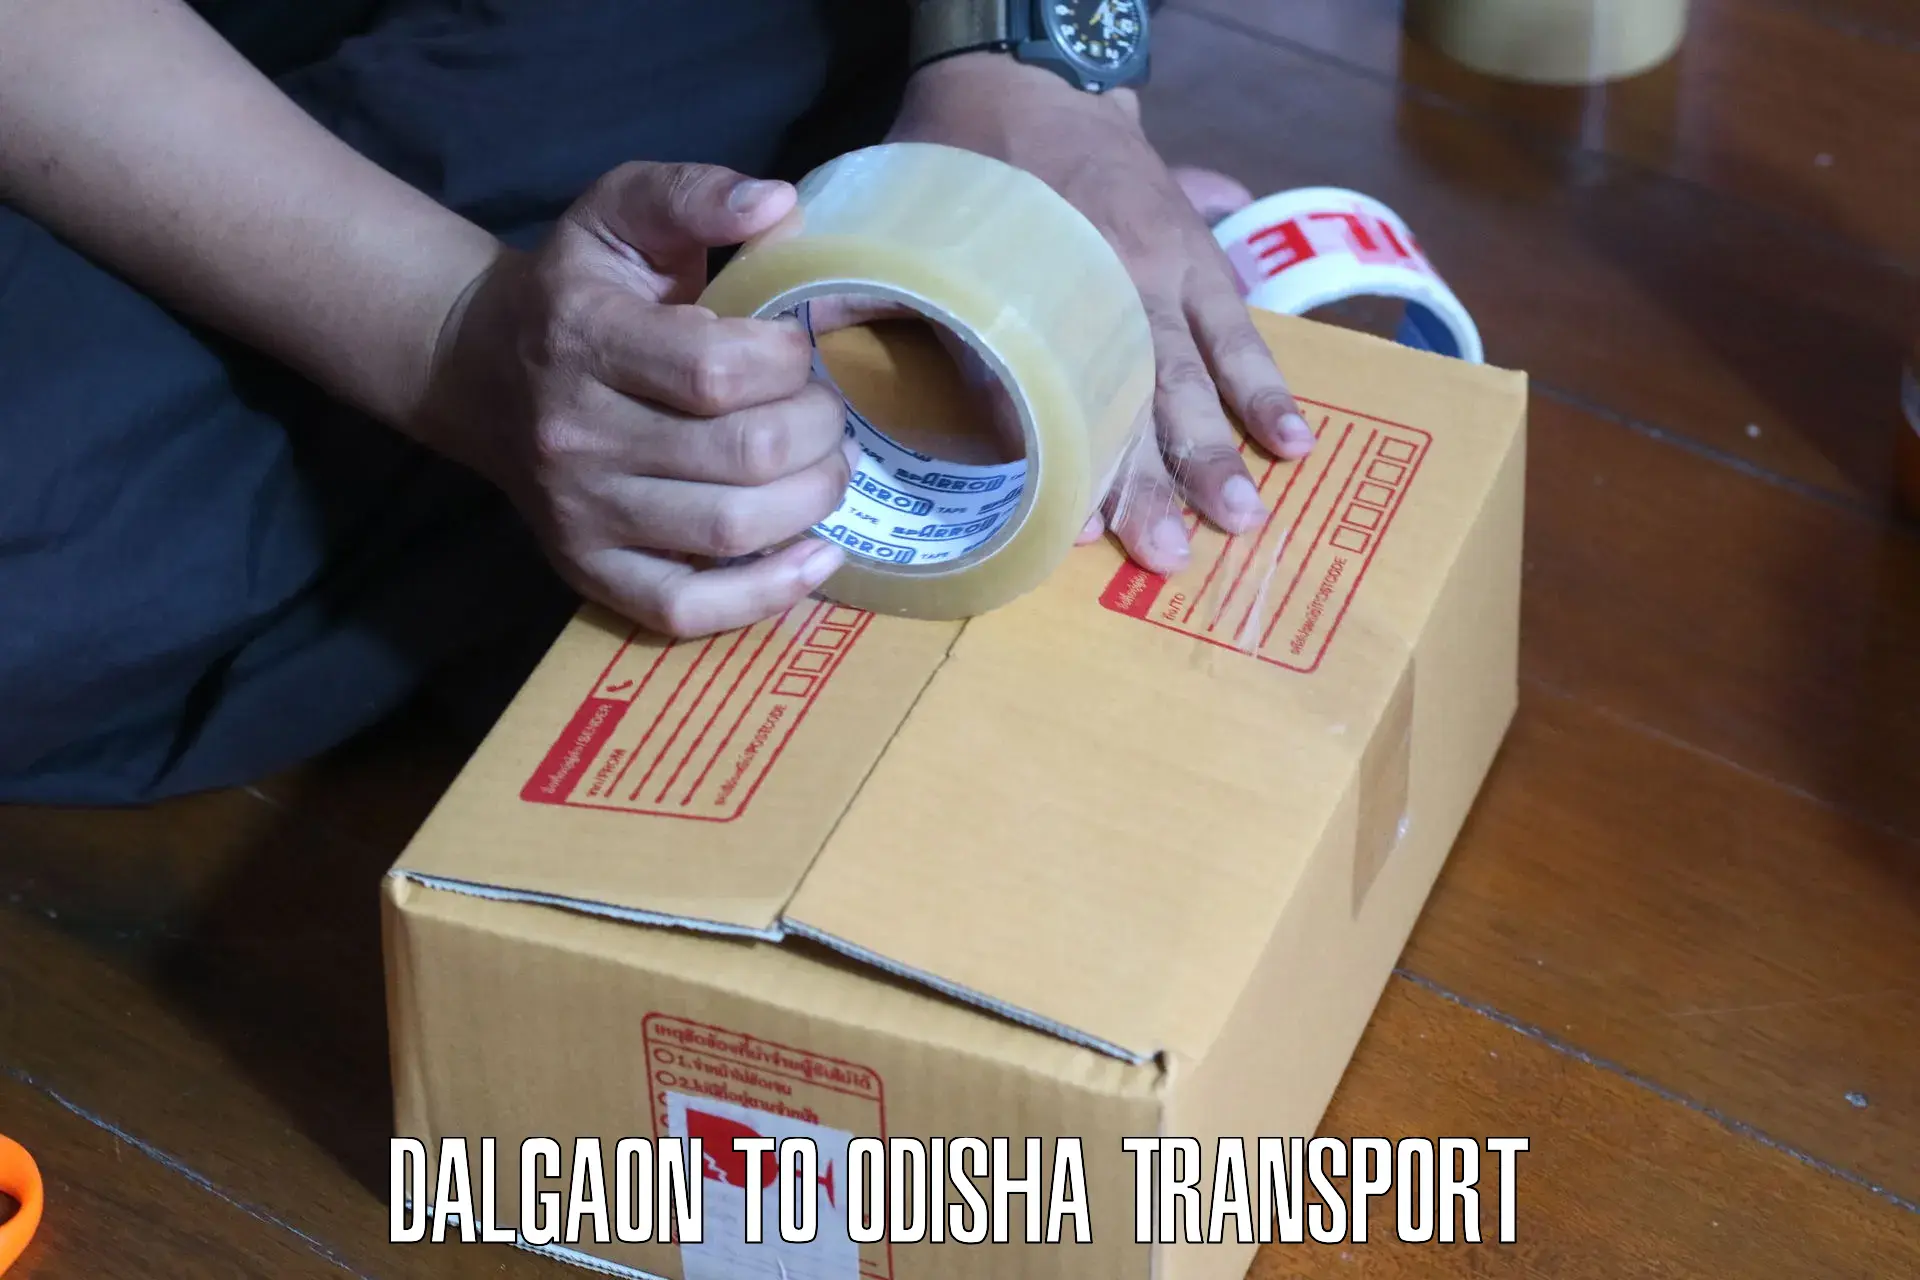 Daily parcel service transport Dalgaon to Udayagiri Kandhamal